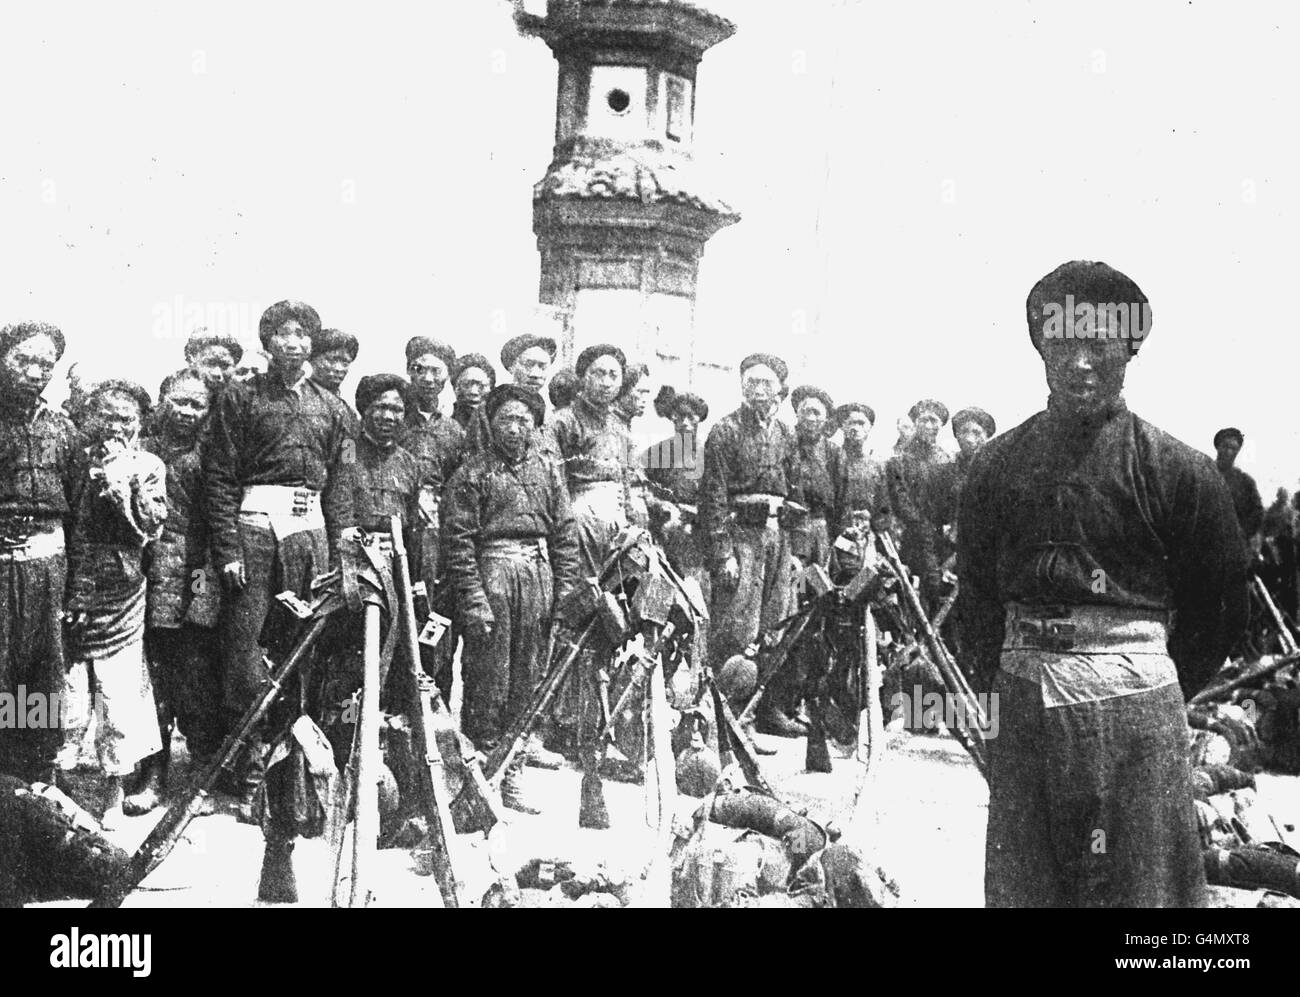 LA RIVOLUZIONE CINESE: Membri dell'esercito cinese durante la rivoluzione cinese del 1911. Foto Stock